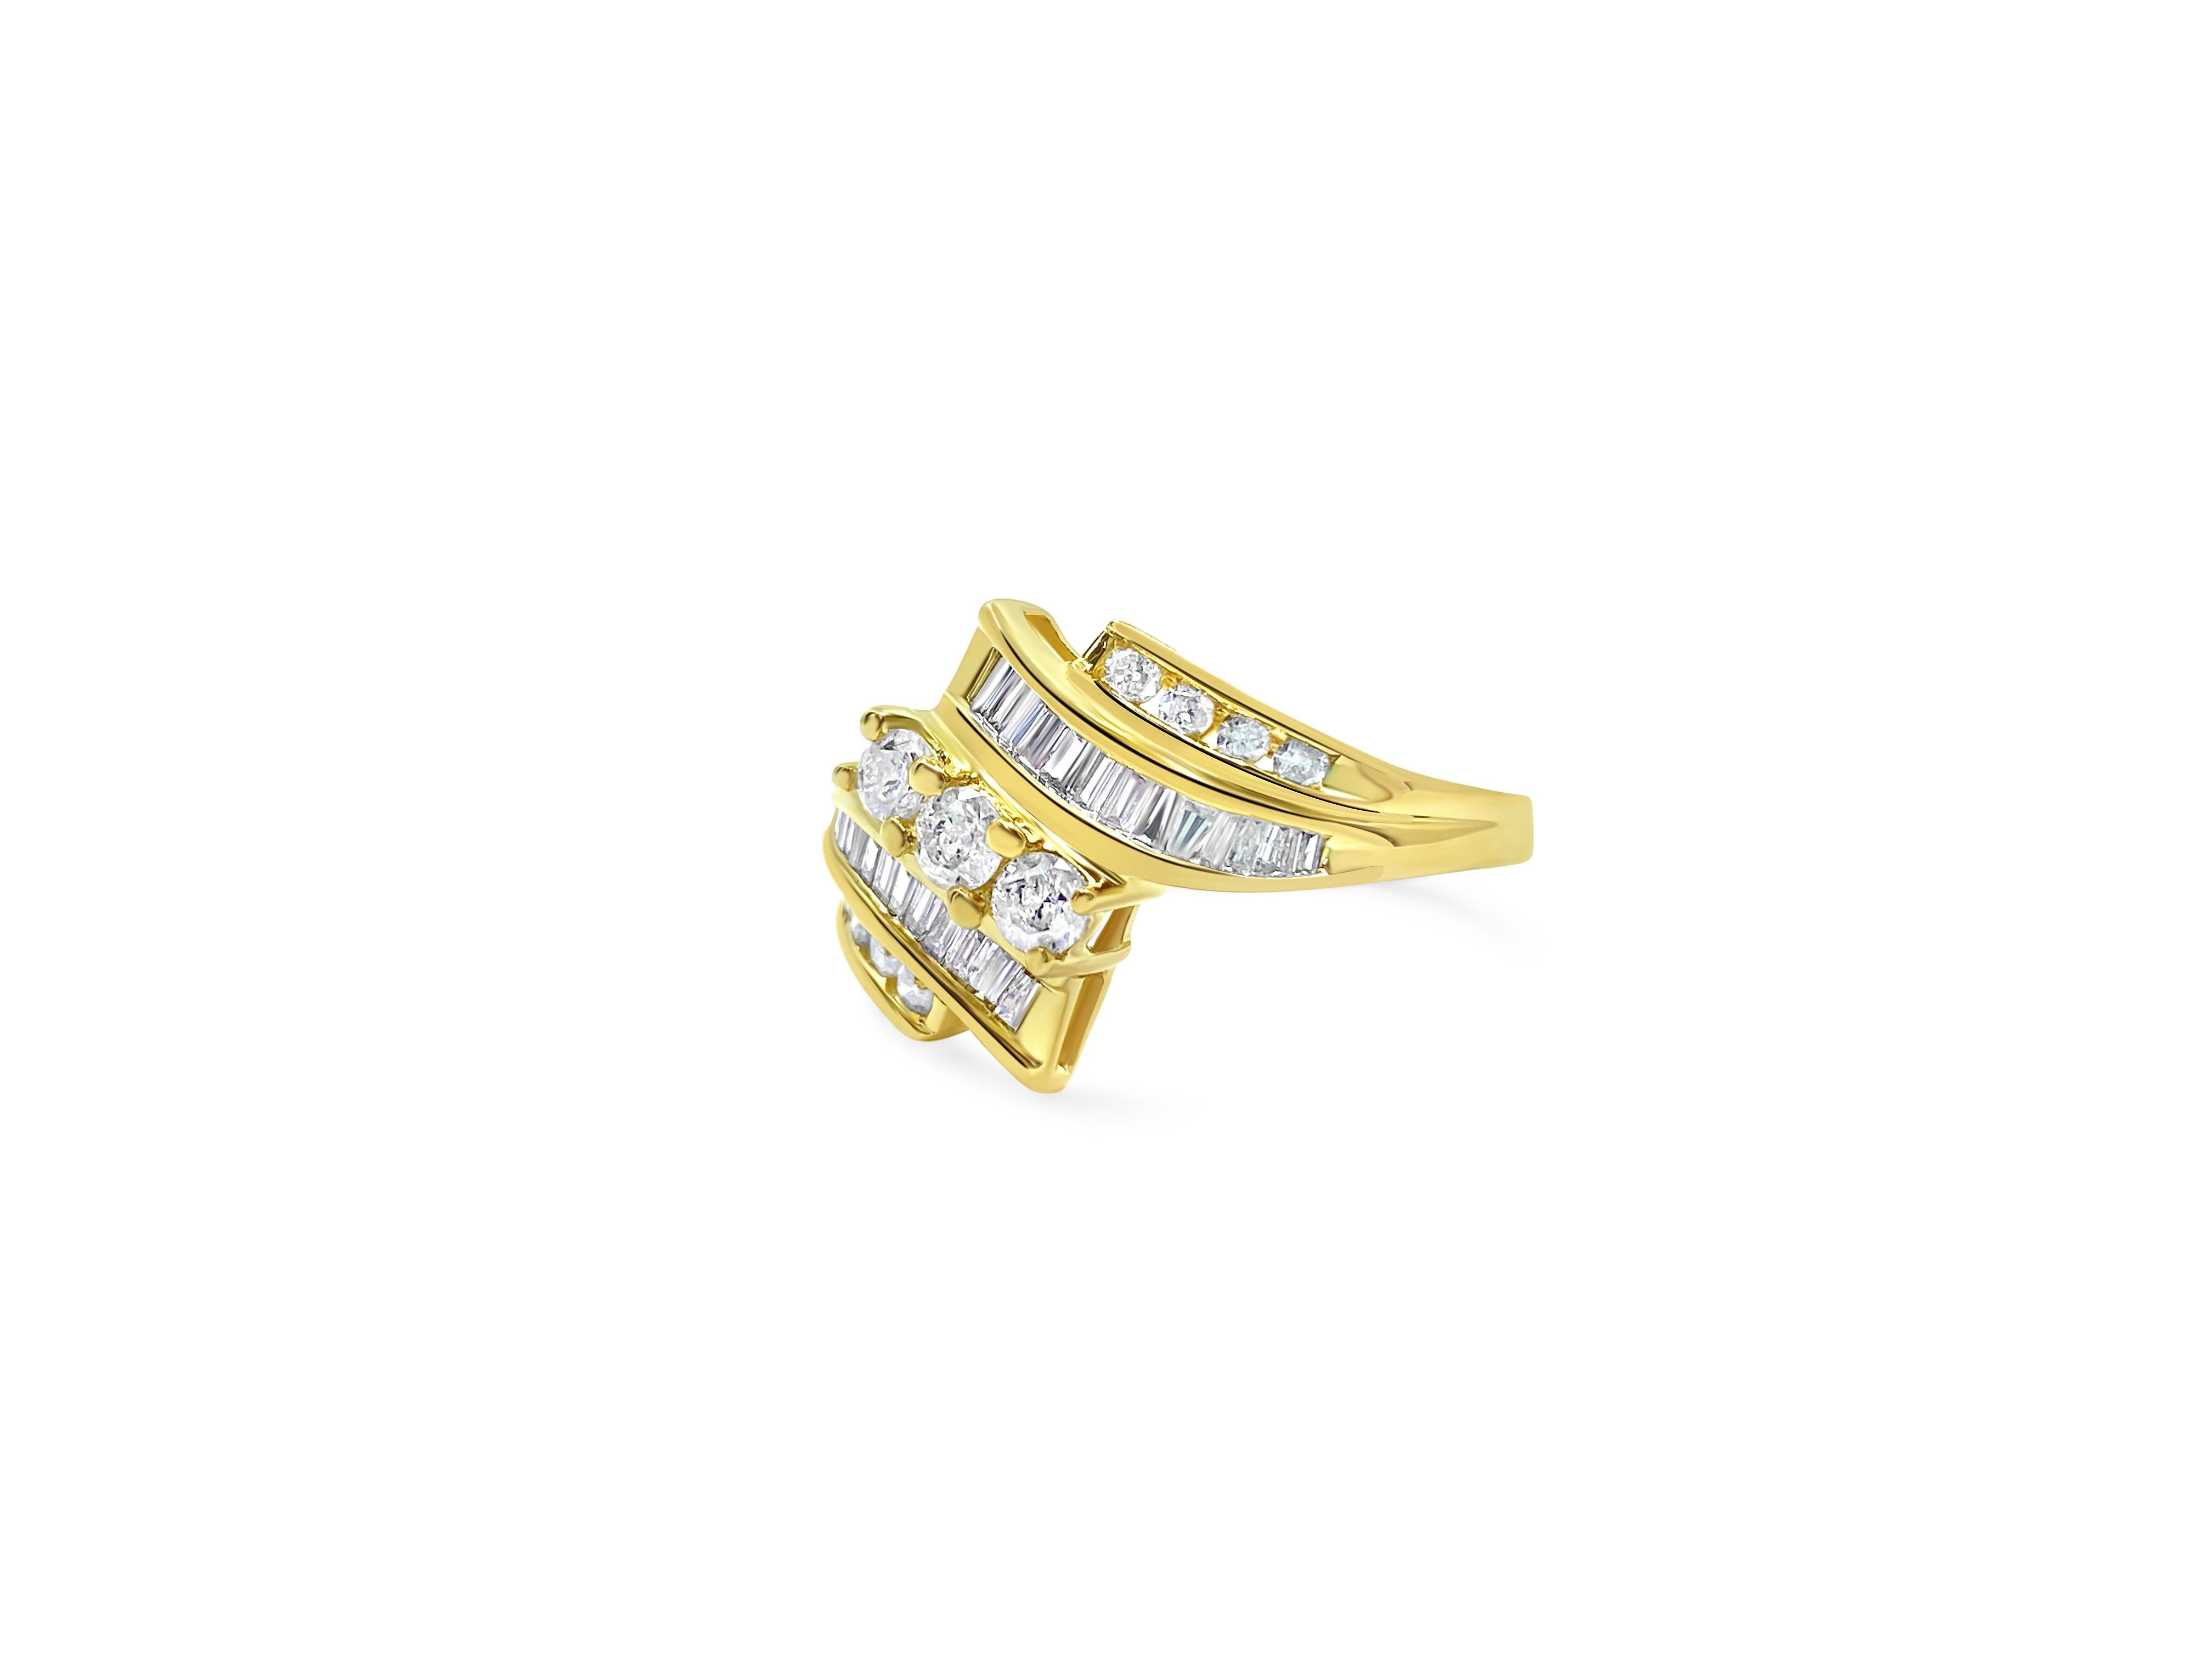 Erleben Sie Eleganz mit unserem atemberaubenden 10-karätigen Diamantring aus Gelbgold mit einem Gesamtgewicht von 1,78 Karat. Jeder Diamant, der eine Reinheit von VS-SI und eine Farbe von G-H aufweist, wird sorgfältig nach seiner natürlichen